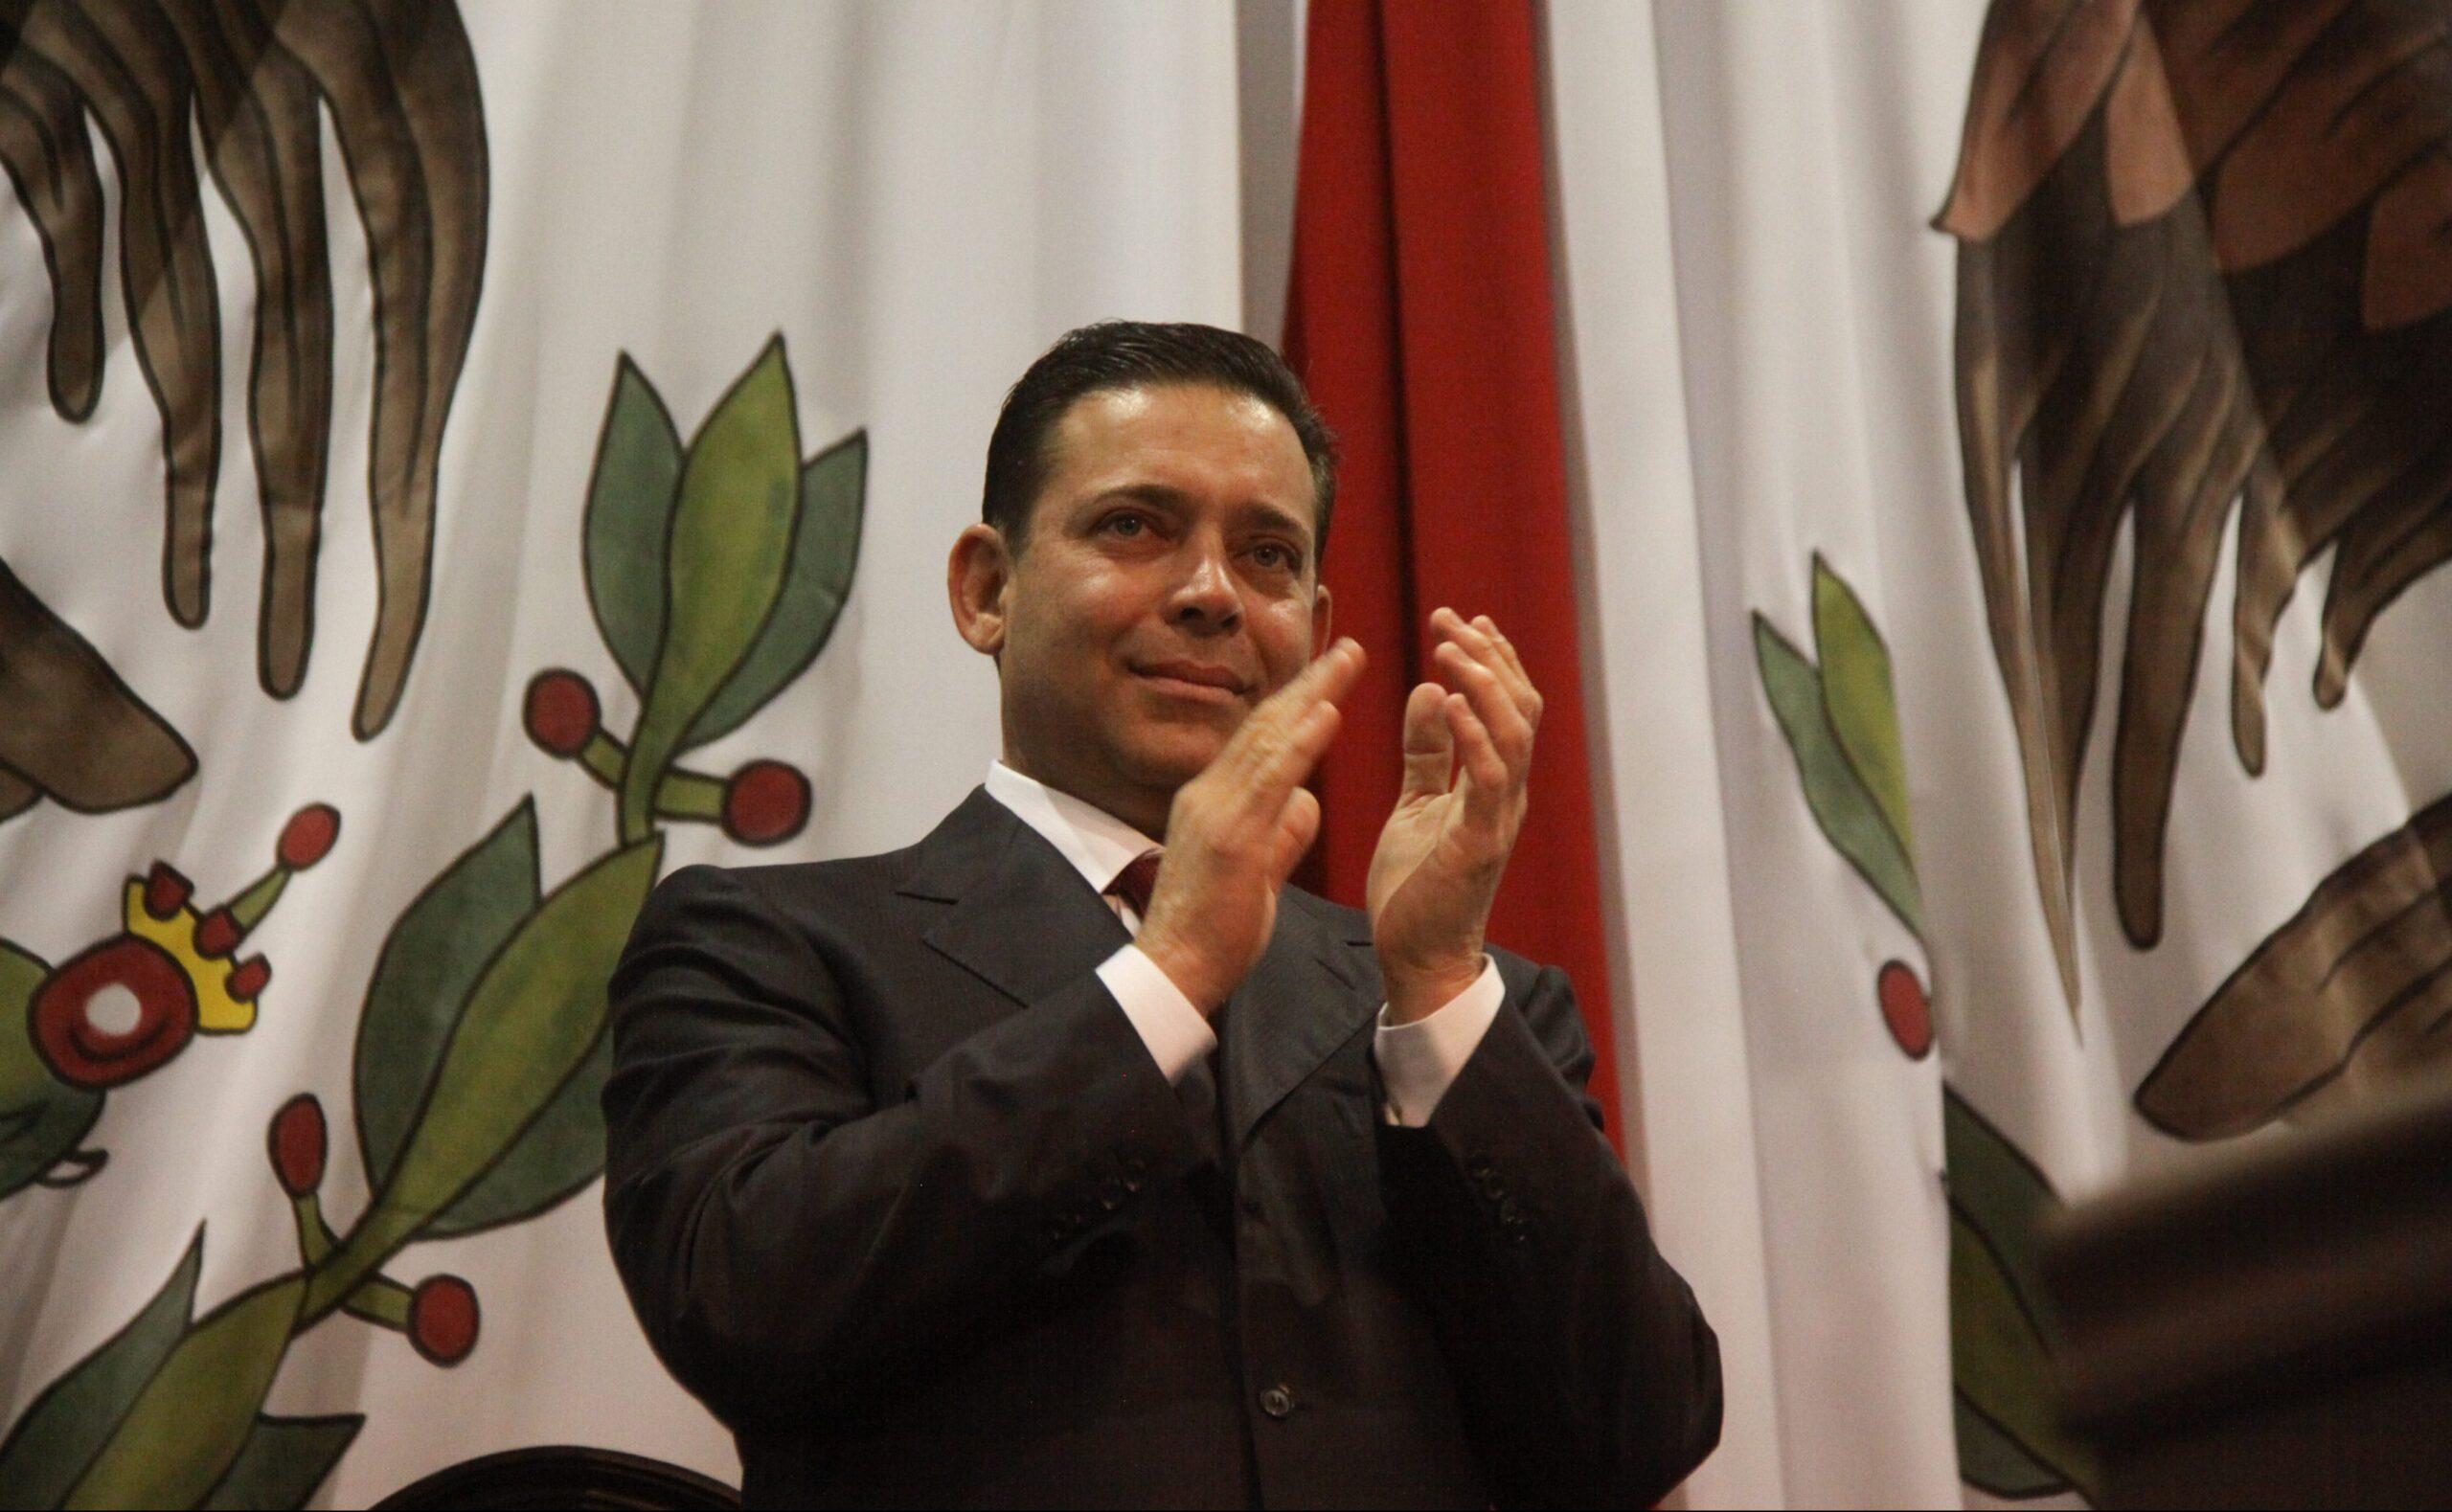 EU solicita extradición del exgobernador de Tamaulipas Eugenio Hernández por lavado de dinero